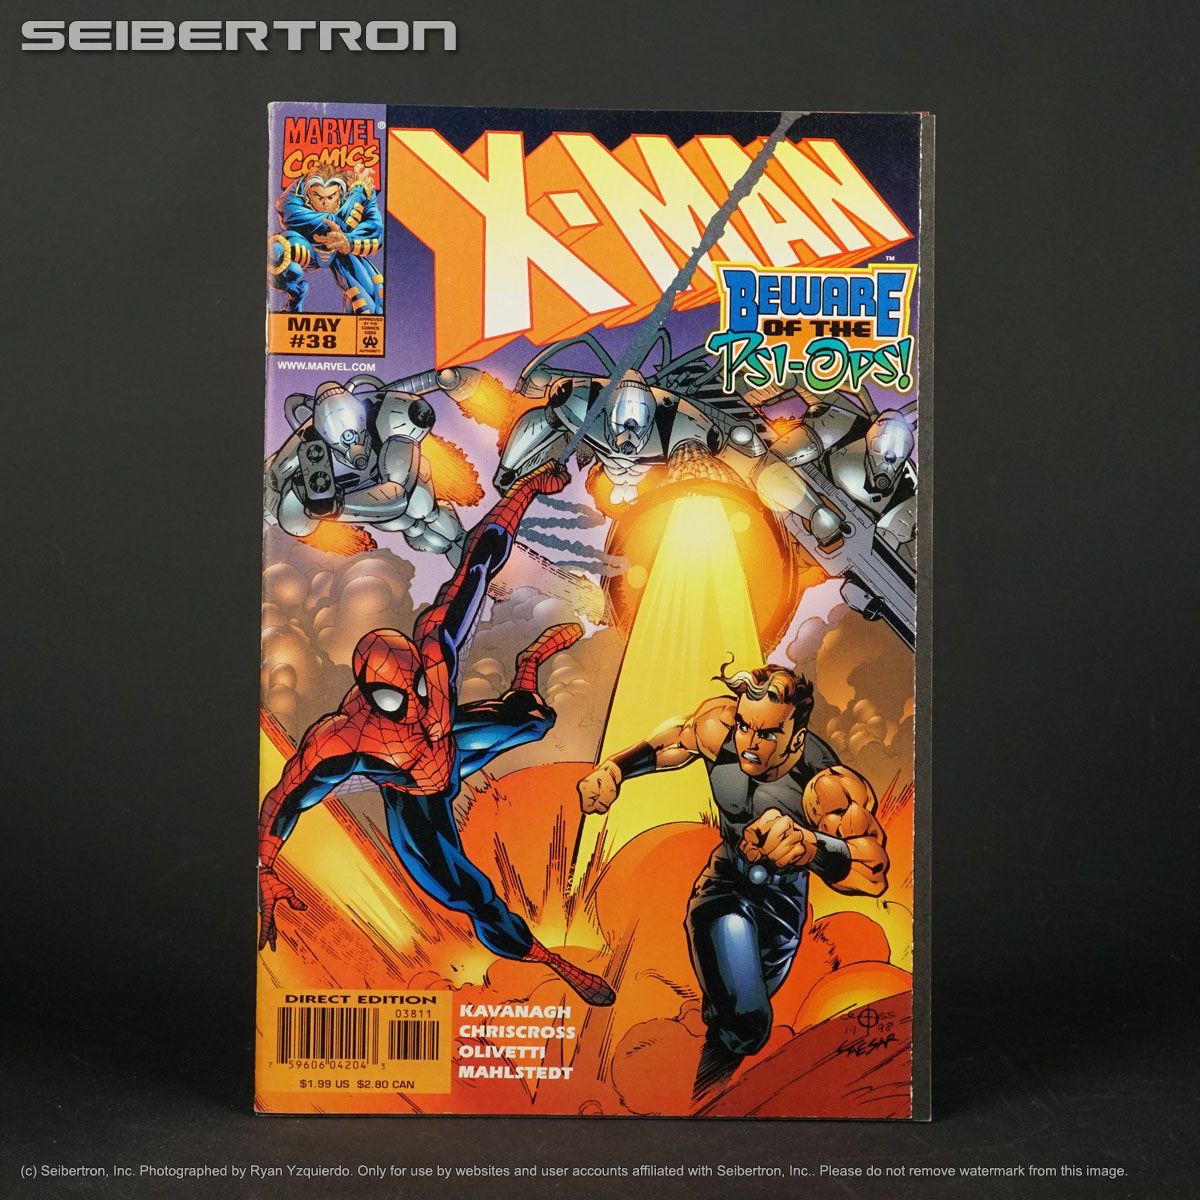 X-MAN (1995) #38 Marvel Comics 1998 featuring Spider-man (A) Chriscross 200203a